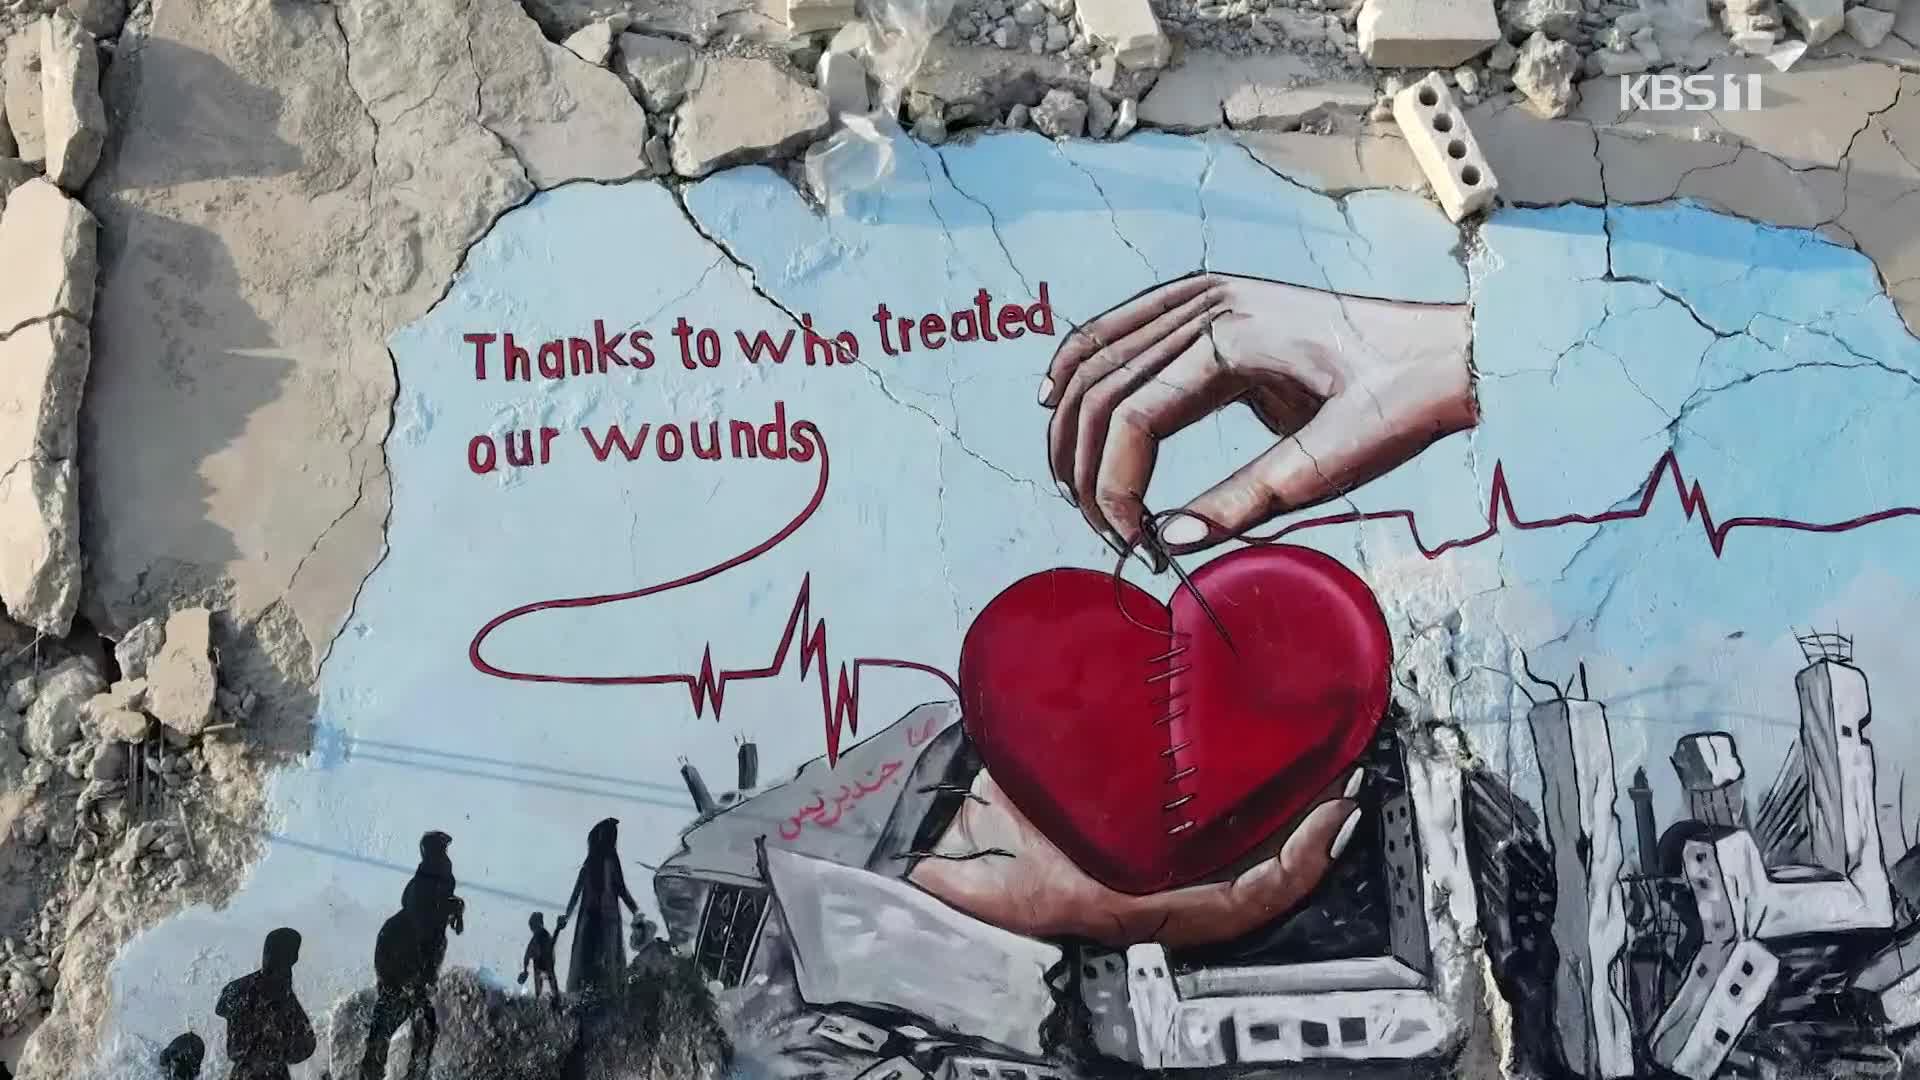 [오늘의 영상] 지진이 지나간 자리에 생겨난 벽화